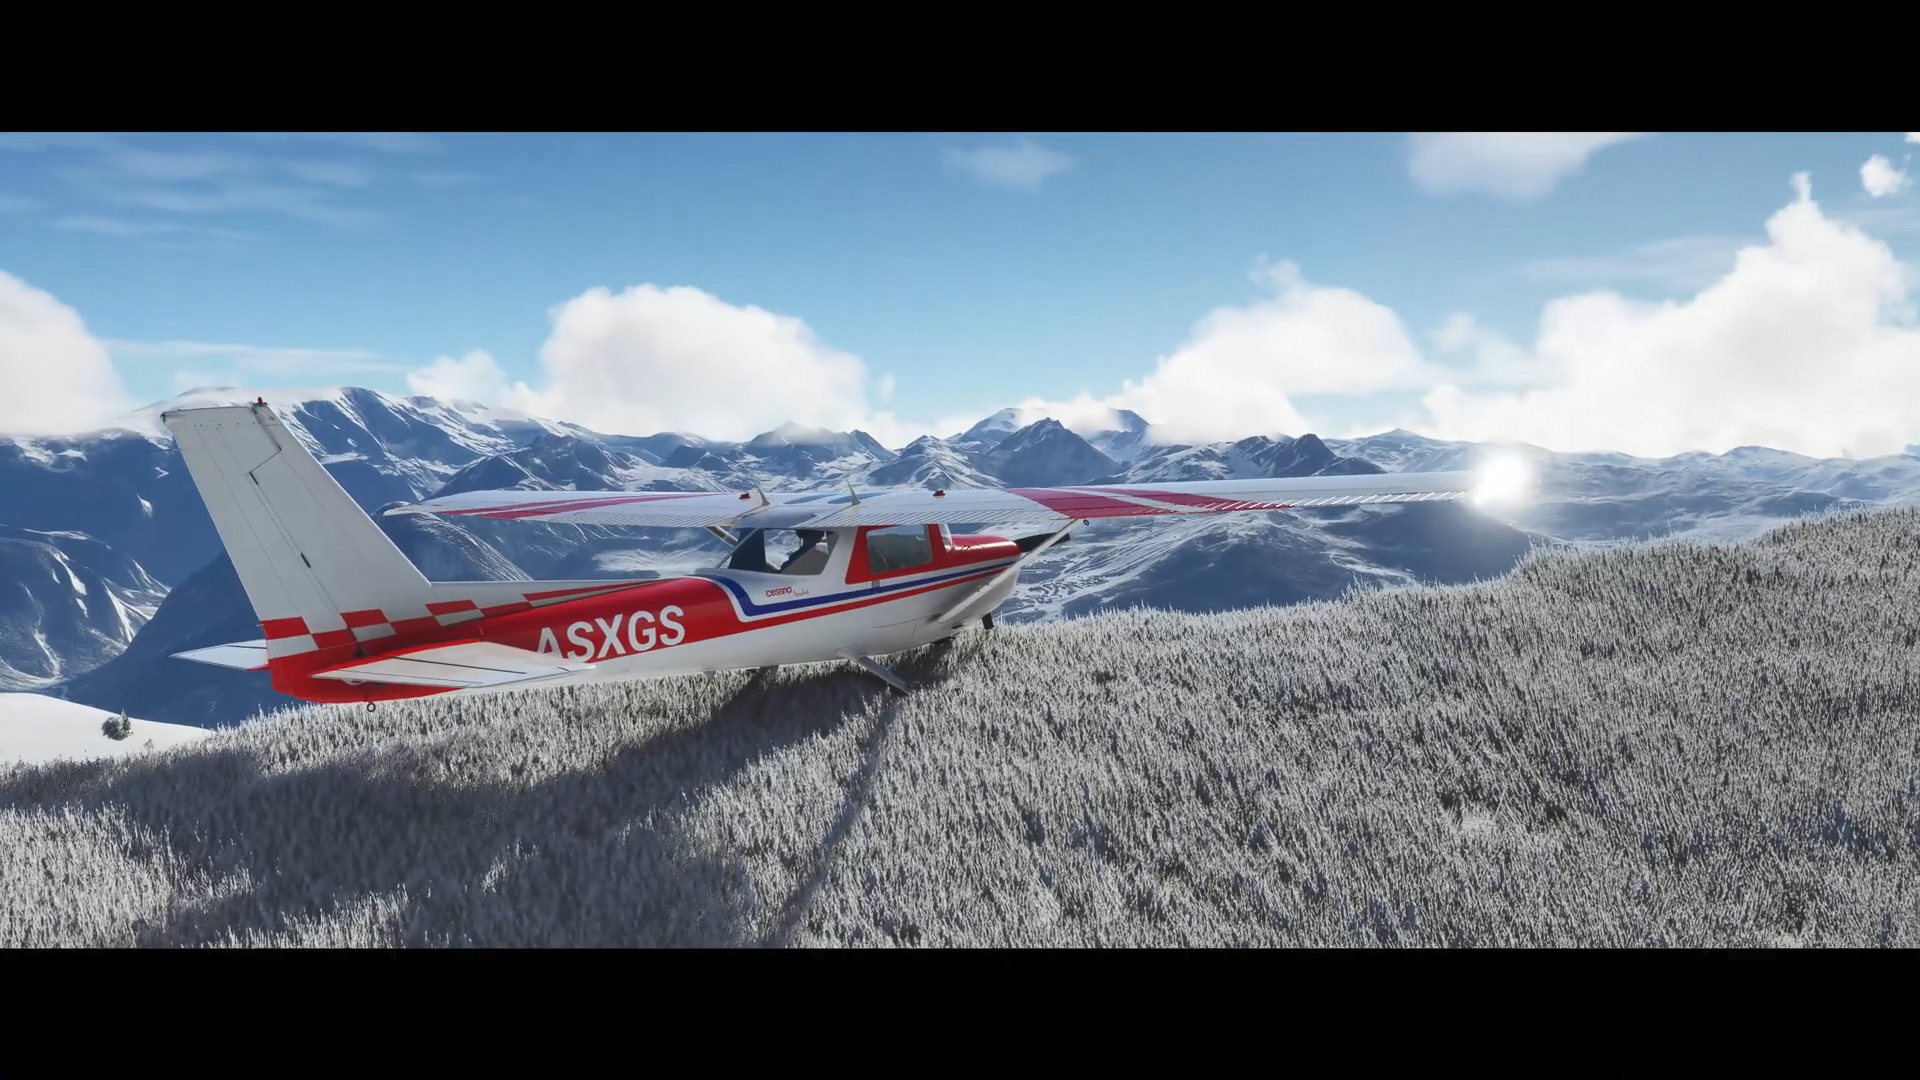 《微軟飛行模擬》加入冰雪天氣效果 與現實世界保持一致